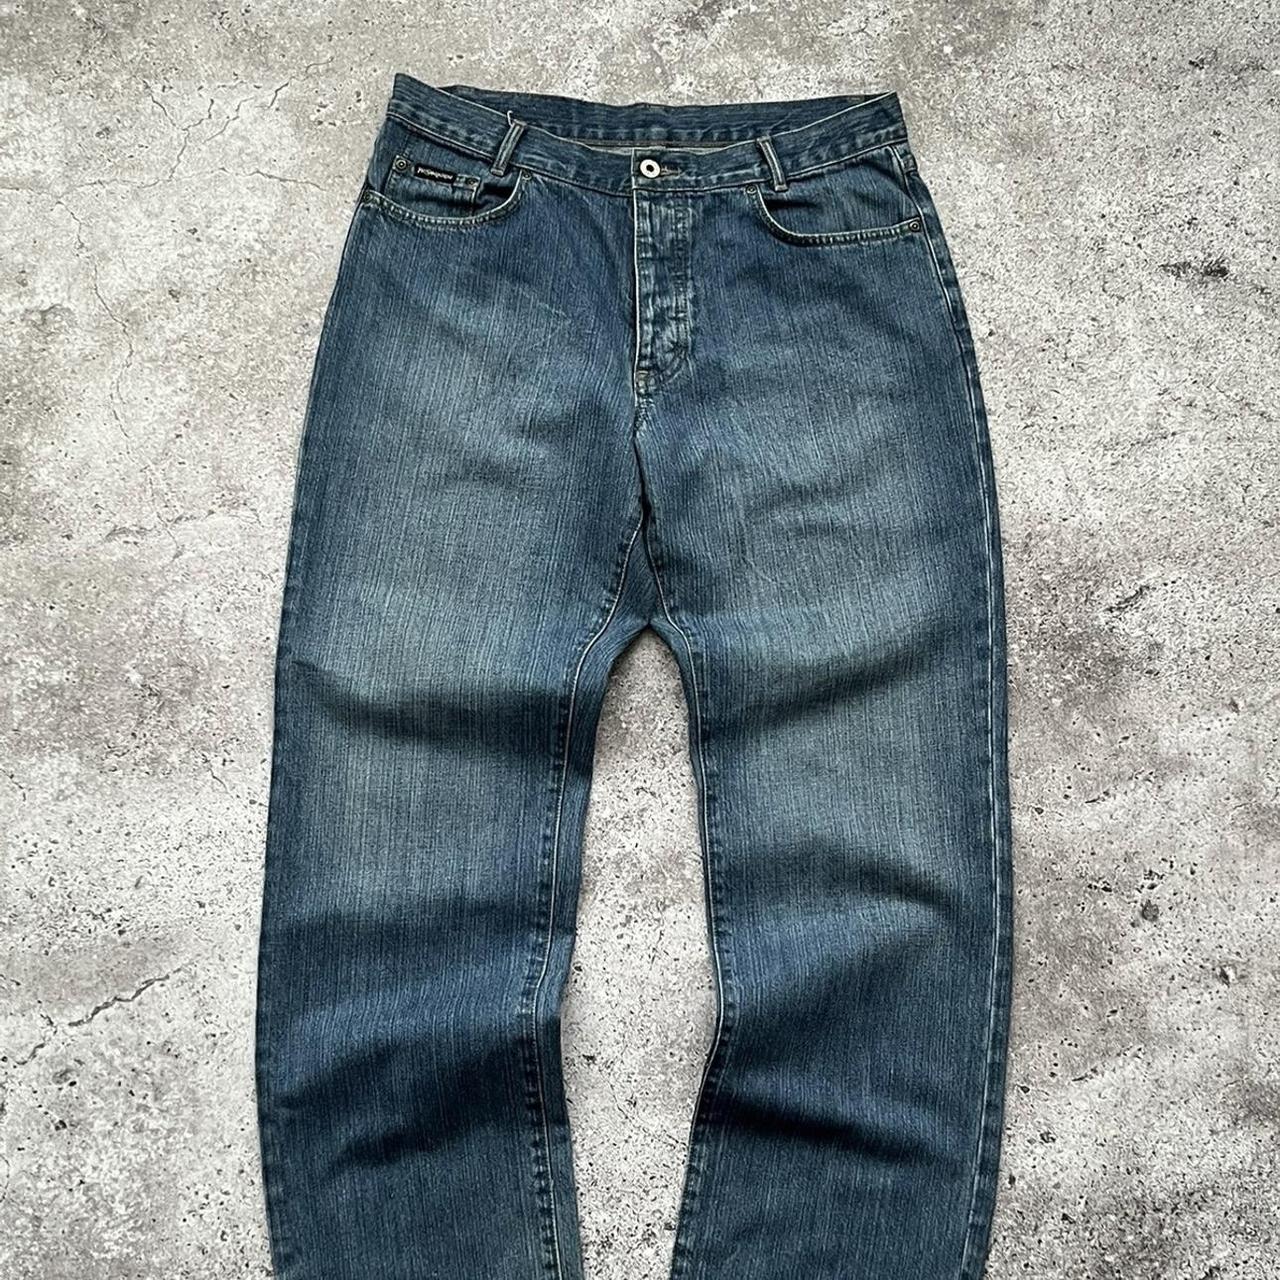 Yves Saint Laurent Jeans : r/Depop